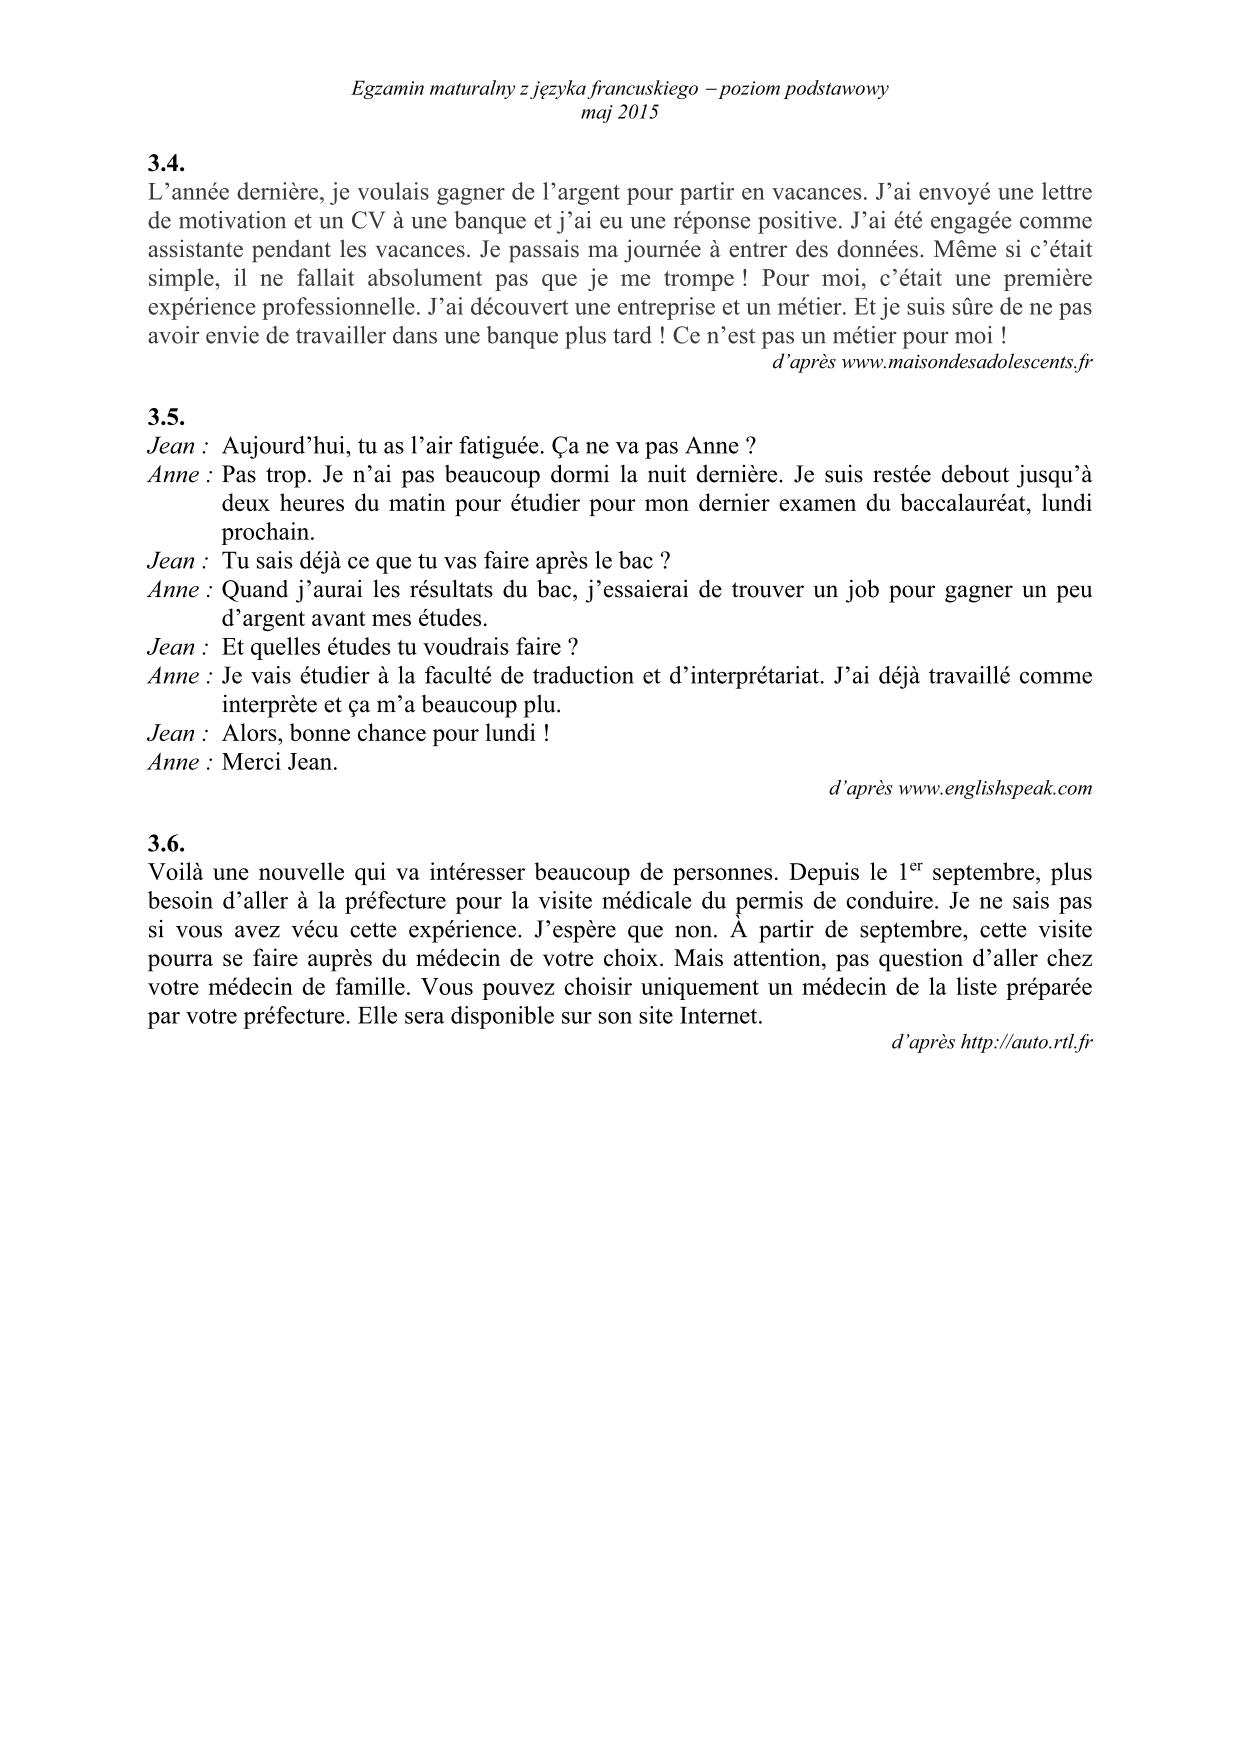 transkrypcja-francuski-poziom-podstawowy-matura-2015-3